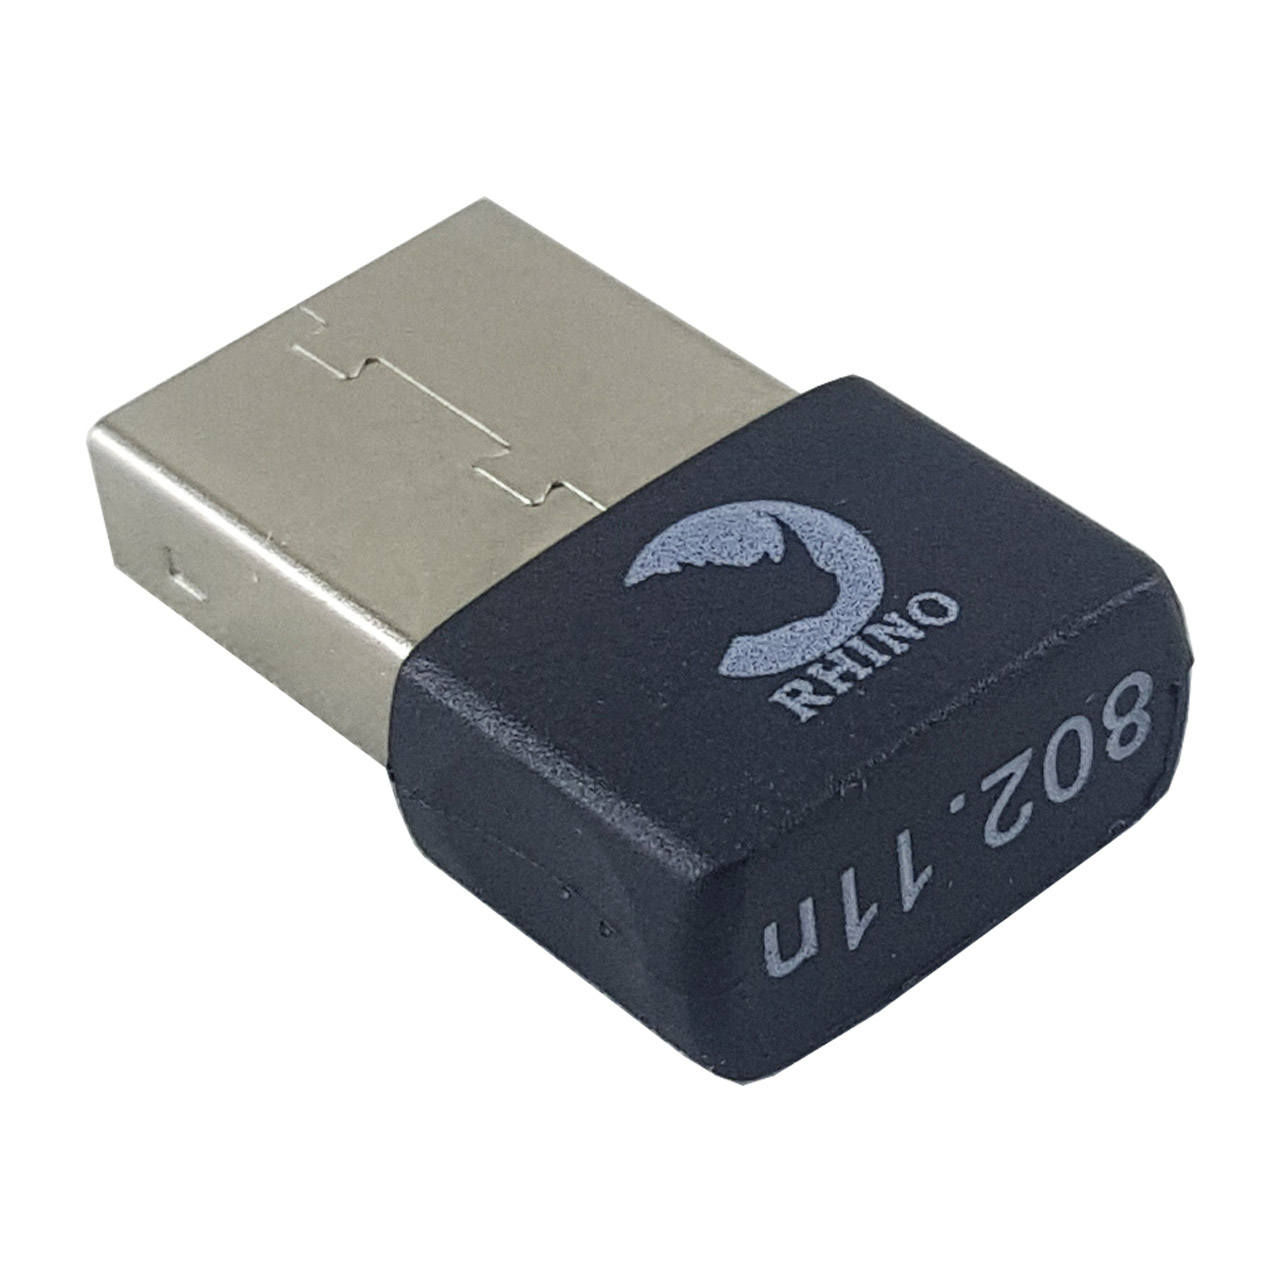 کارت شبکه USB بی سیم رهینو مدل UW06